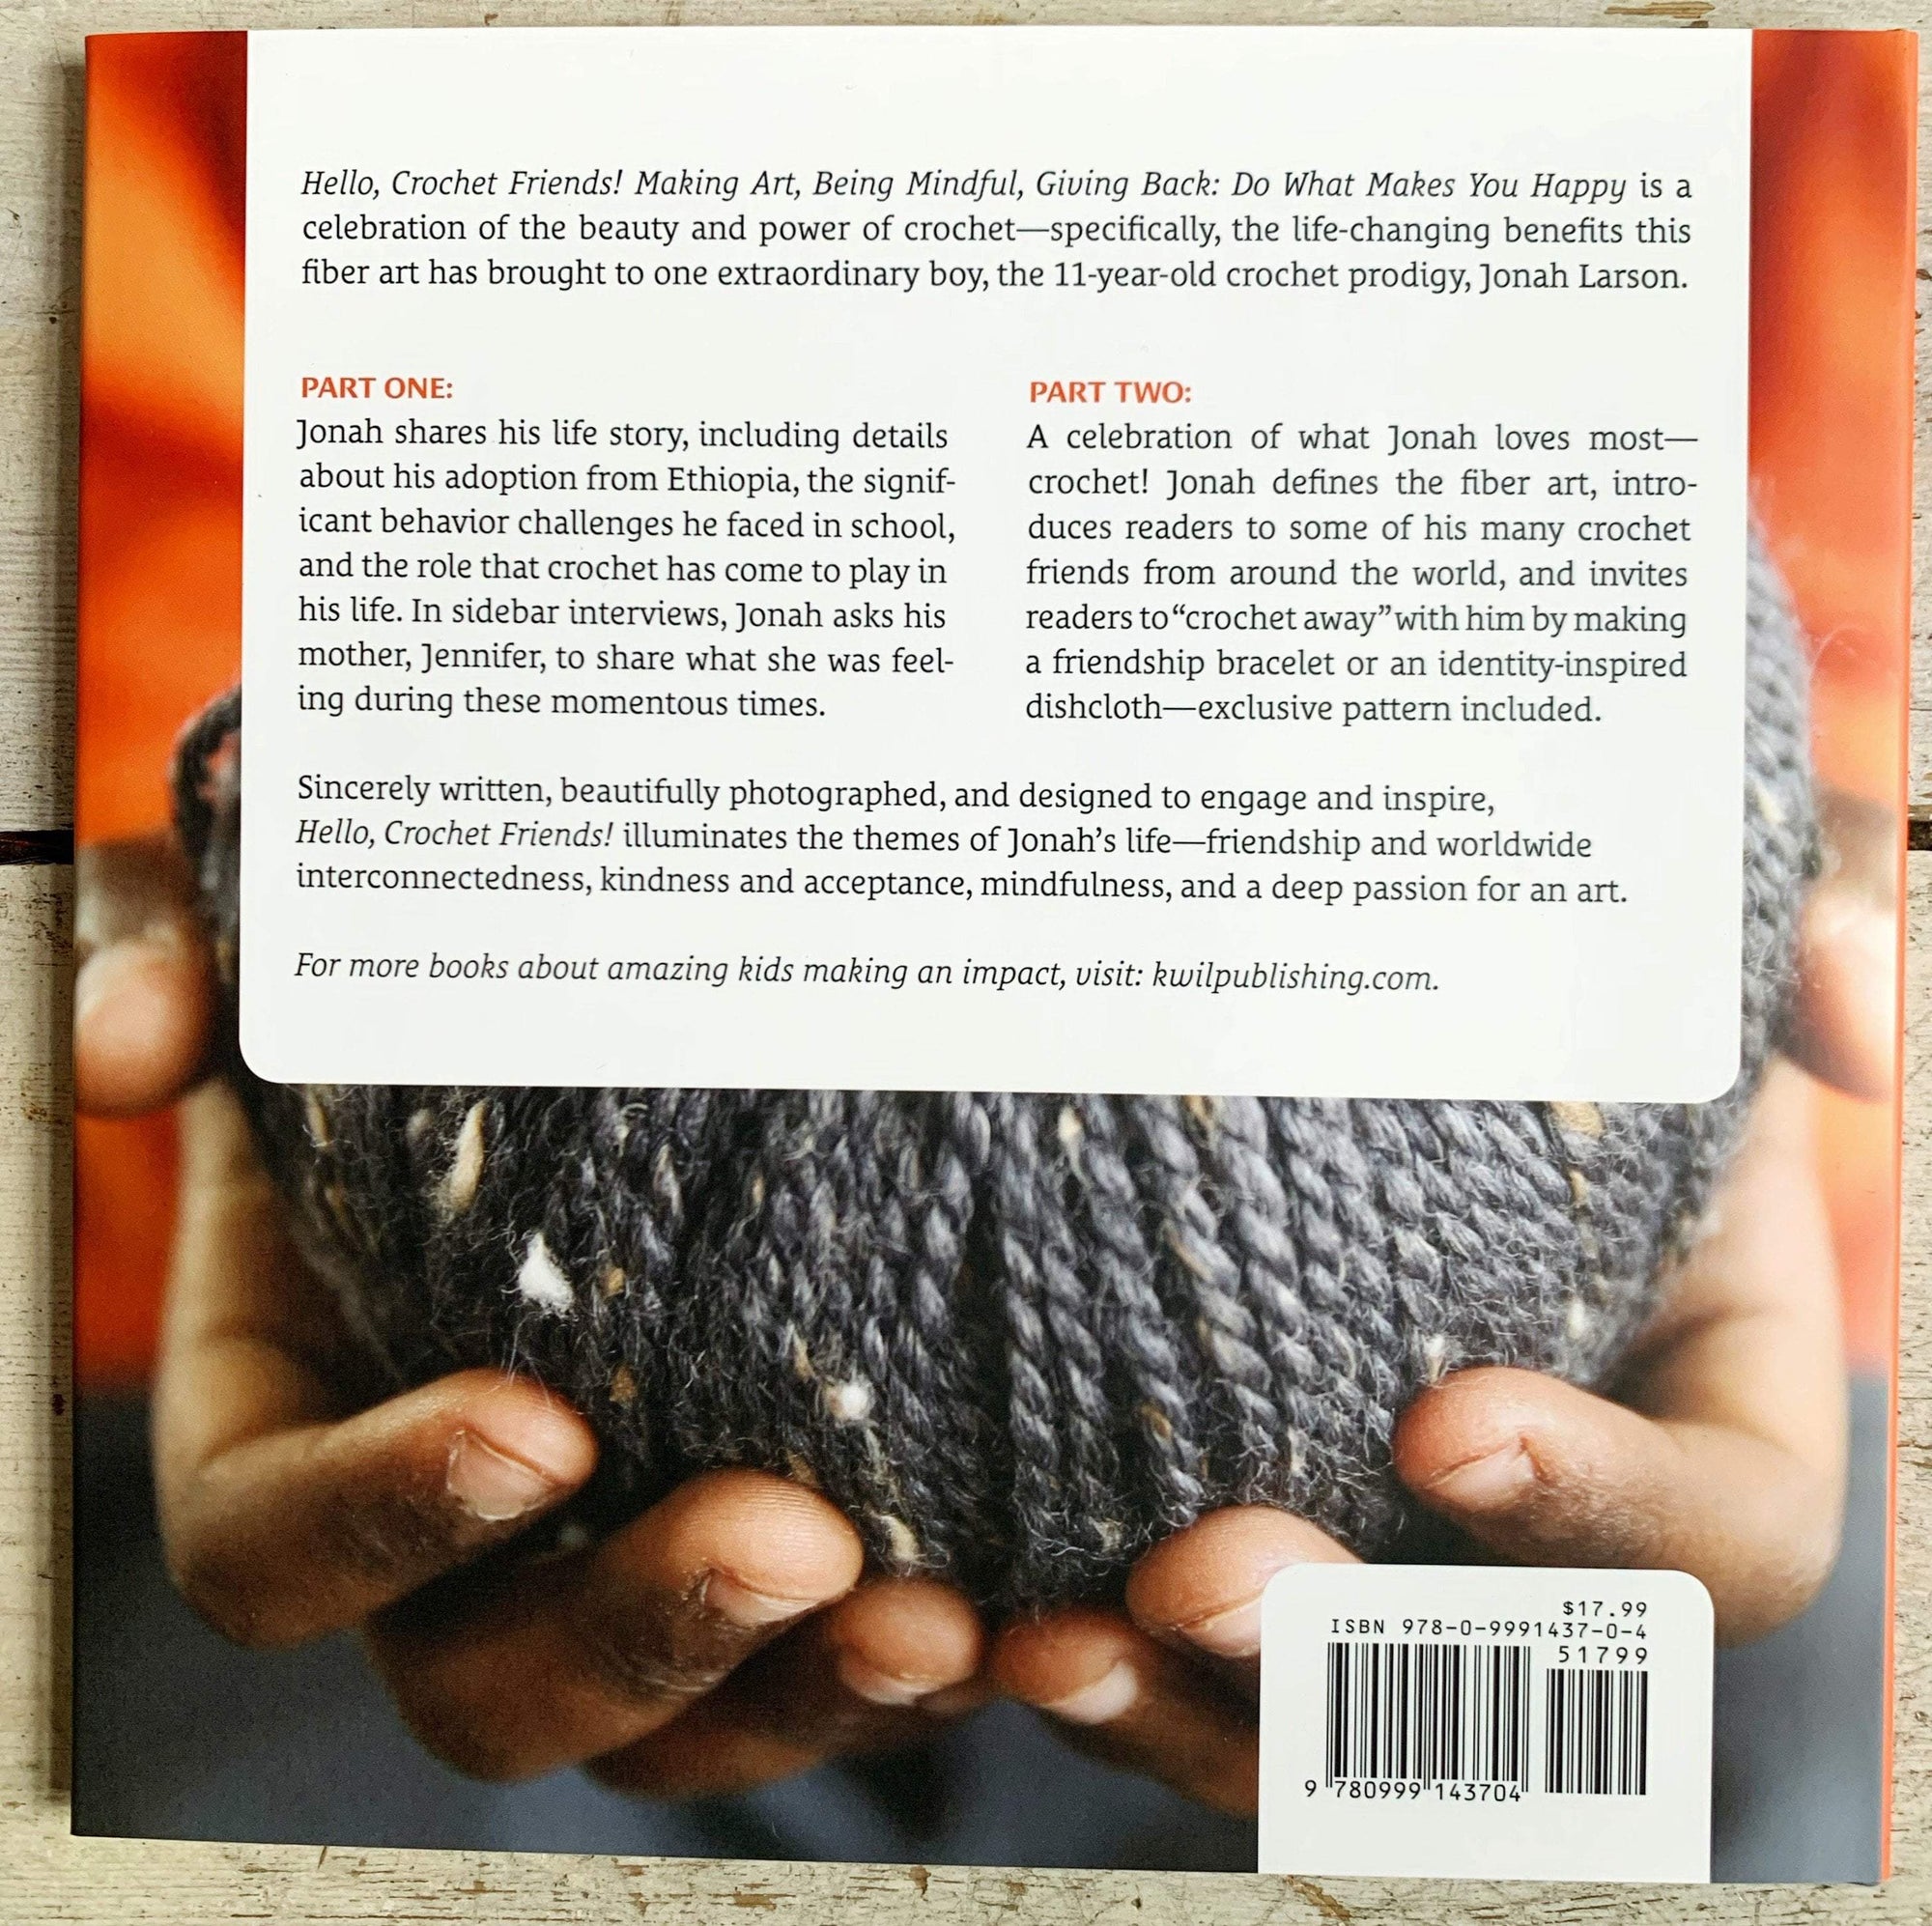 Hello, Crochet Friends! by Jonah Larson Search Press